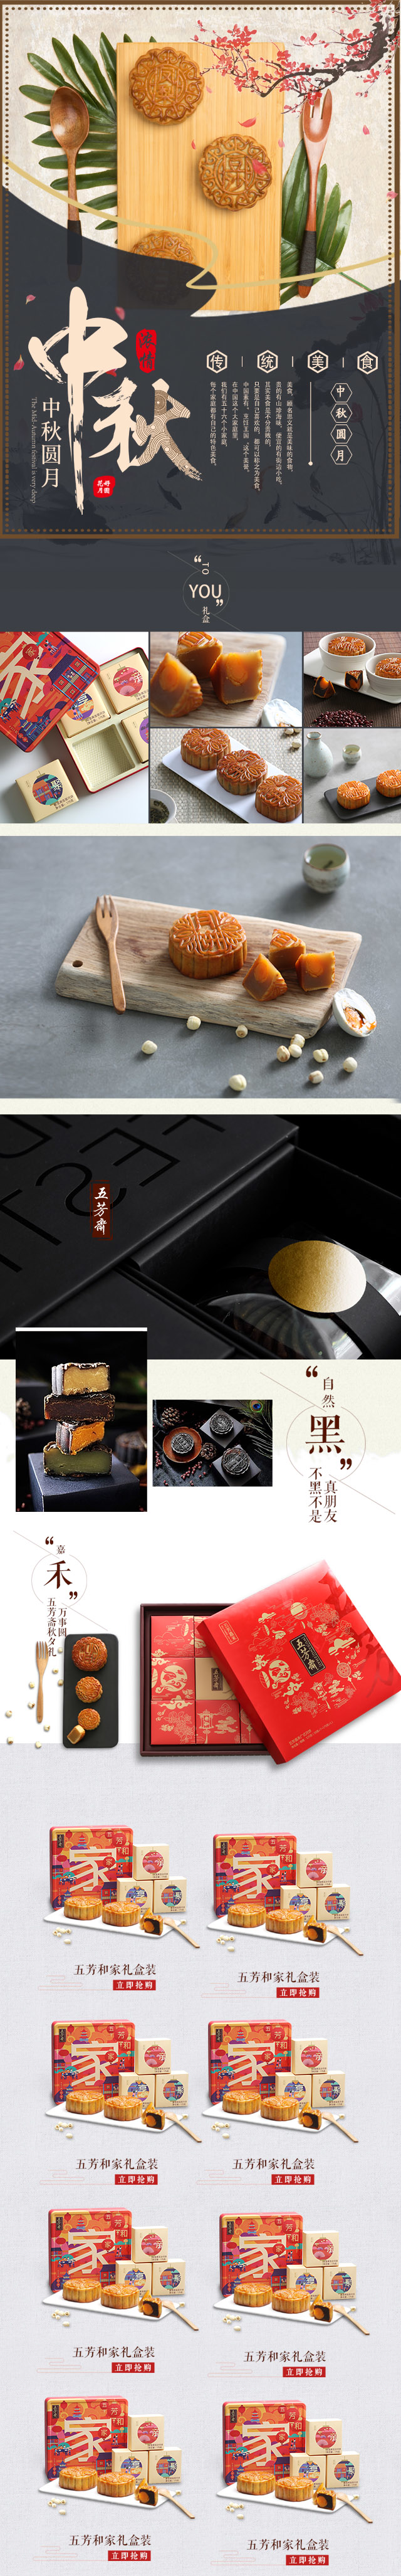 中秋月饼食品生鲜水果零食无线手机端首页模板源文件电商淘宝天猫psd分层素材